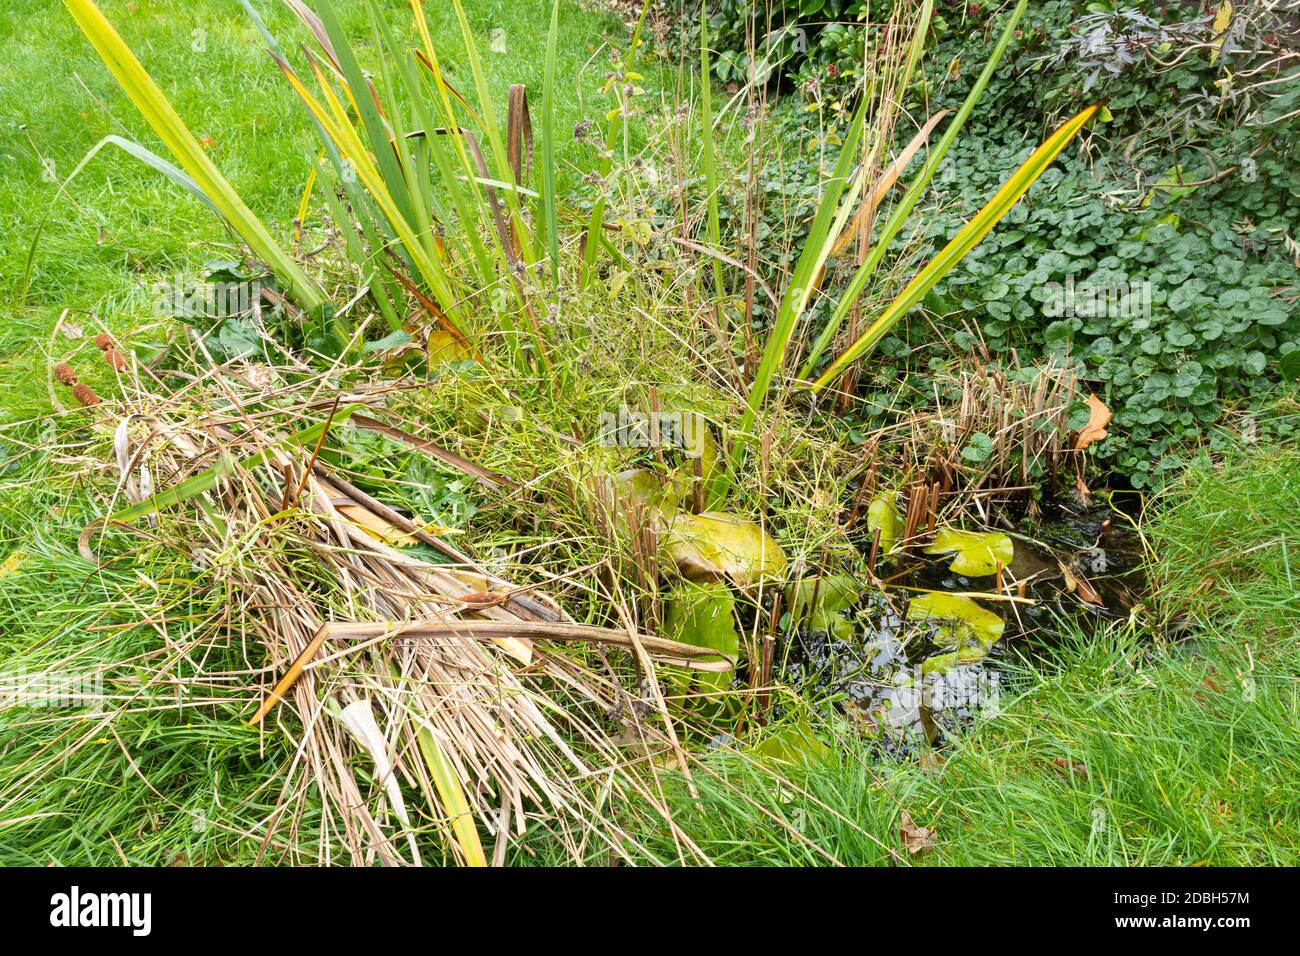 Mantenimento di un giardino stagno fauna selvatica in autunno 2, Regno Unito. Pondside piantine talee sinistra al bordo dello stagno per permettere a tutta la fauna selvatica di tornare allo stagno. Foto Stock